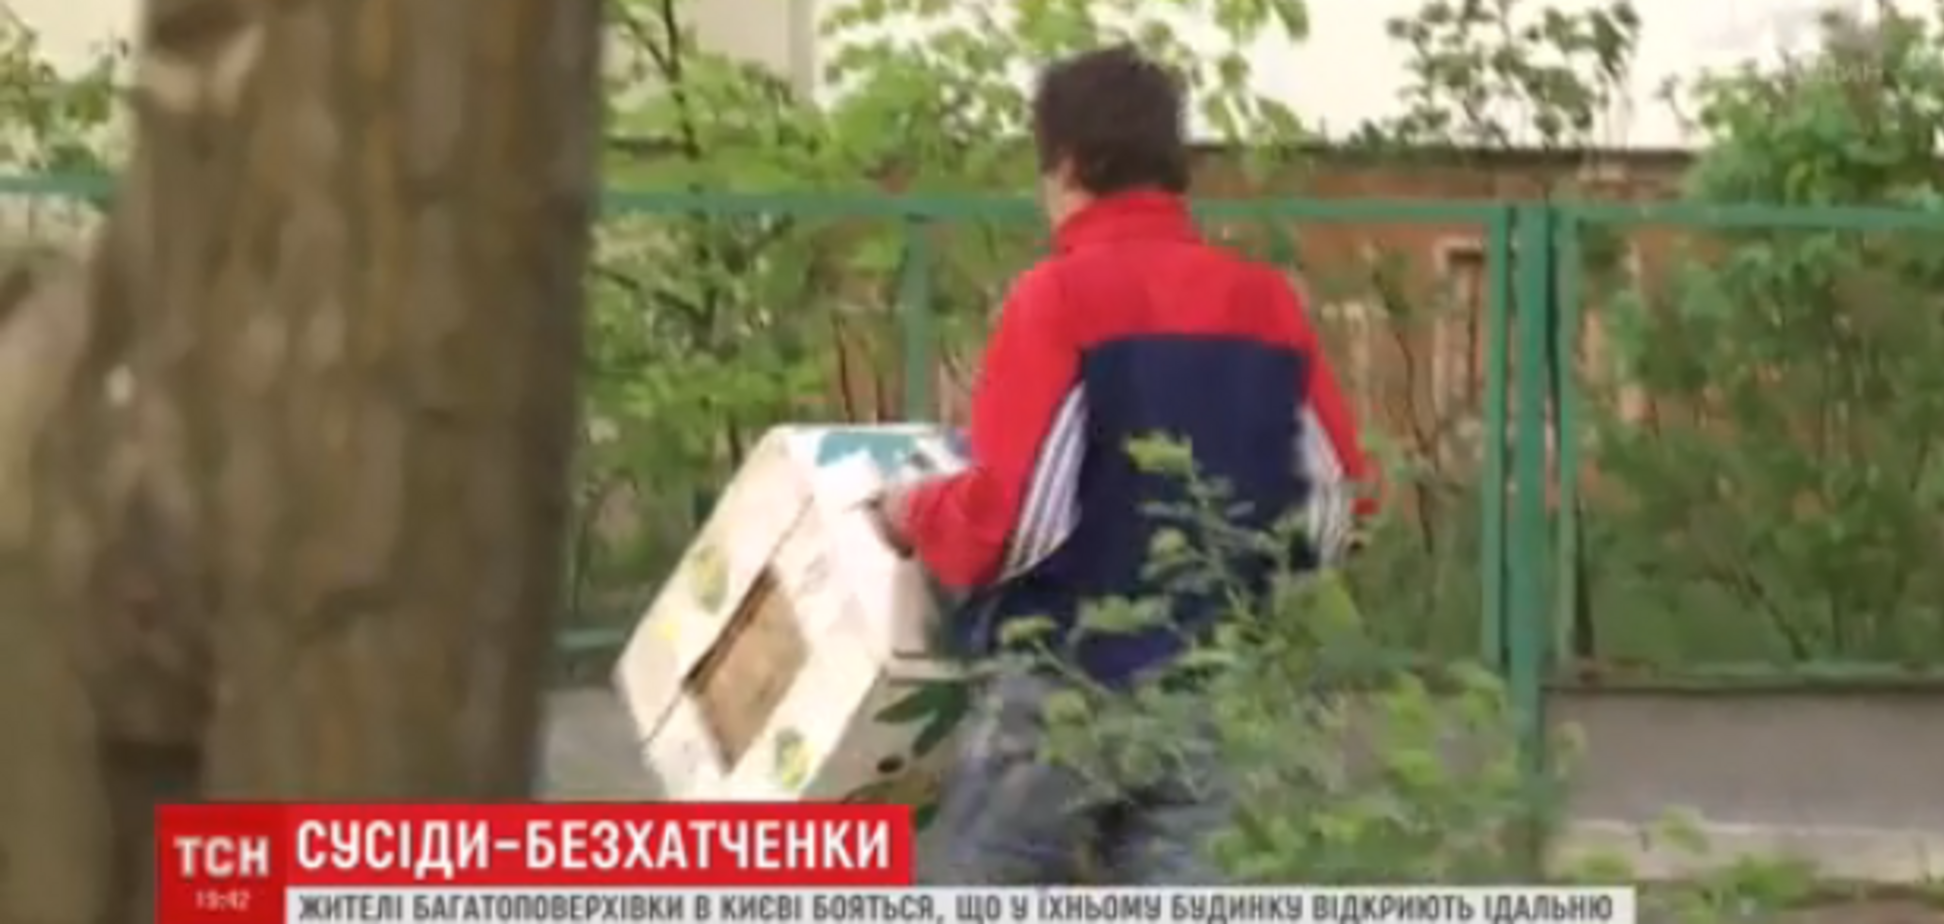 'Дети плачут!' В Киеве бездомные устроили переполох во дворе дома 